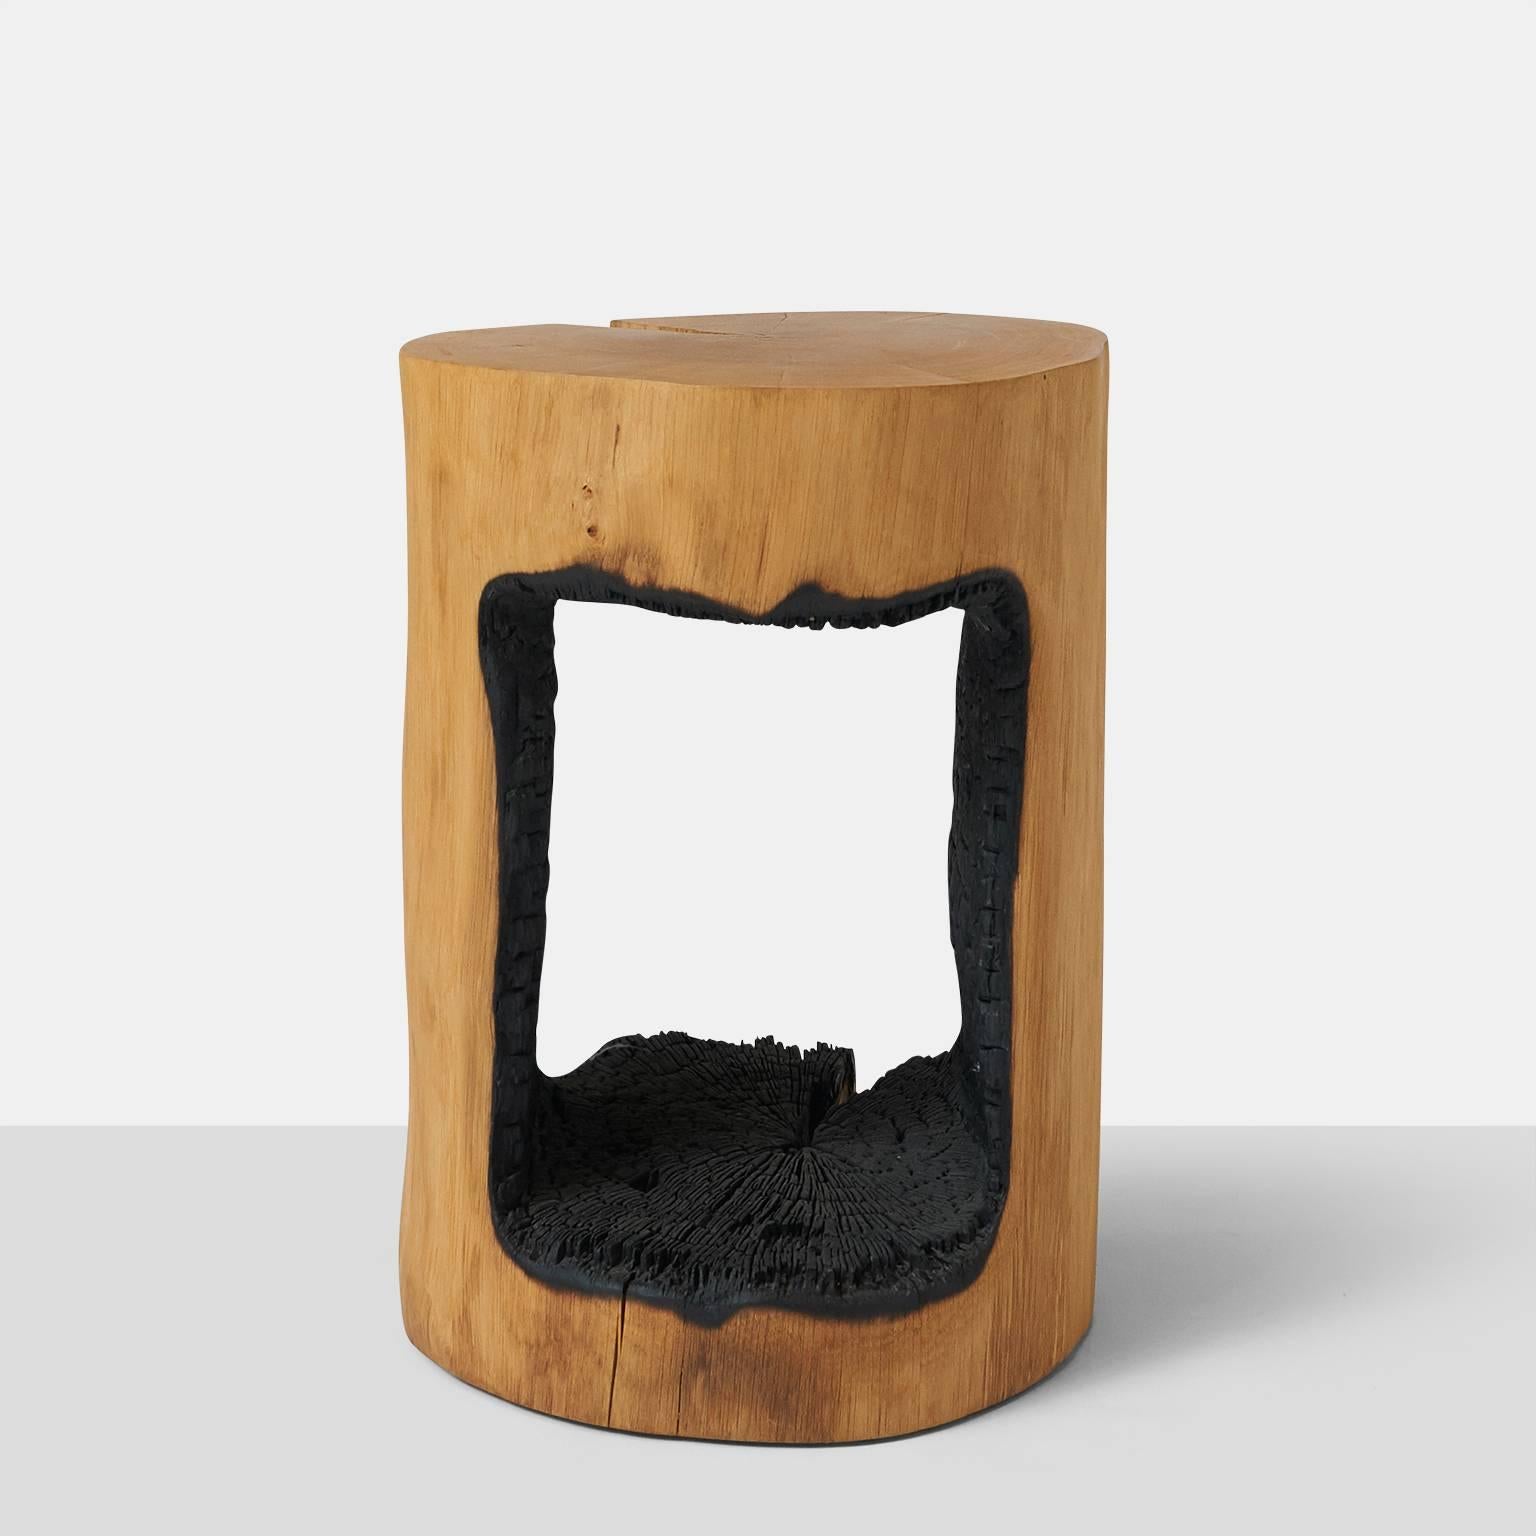 Organic Modern Side Table in Oak by Kaspar Hamacher